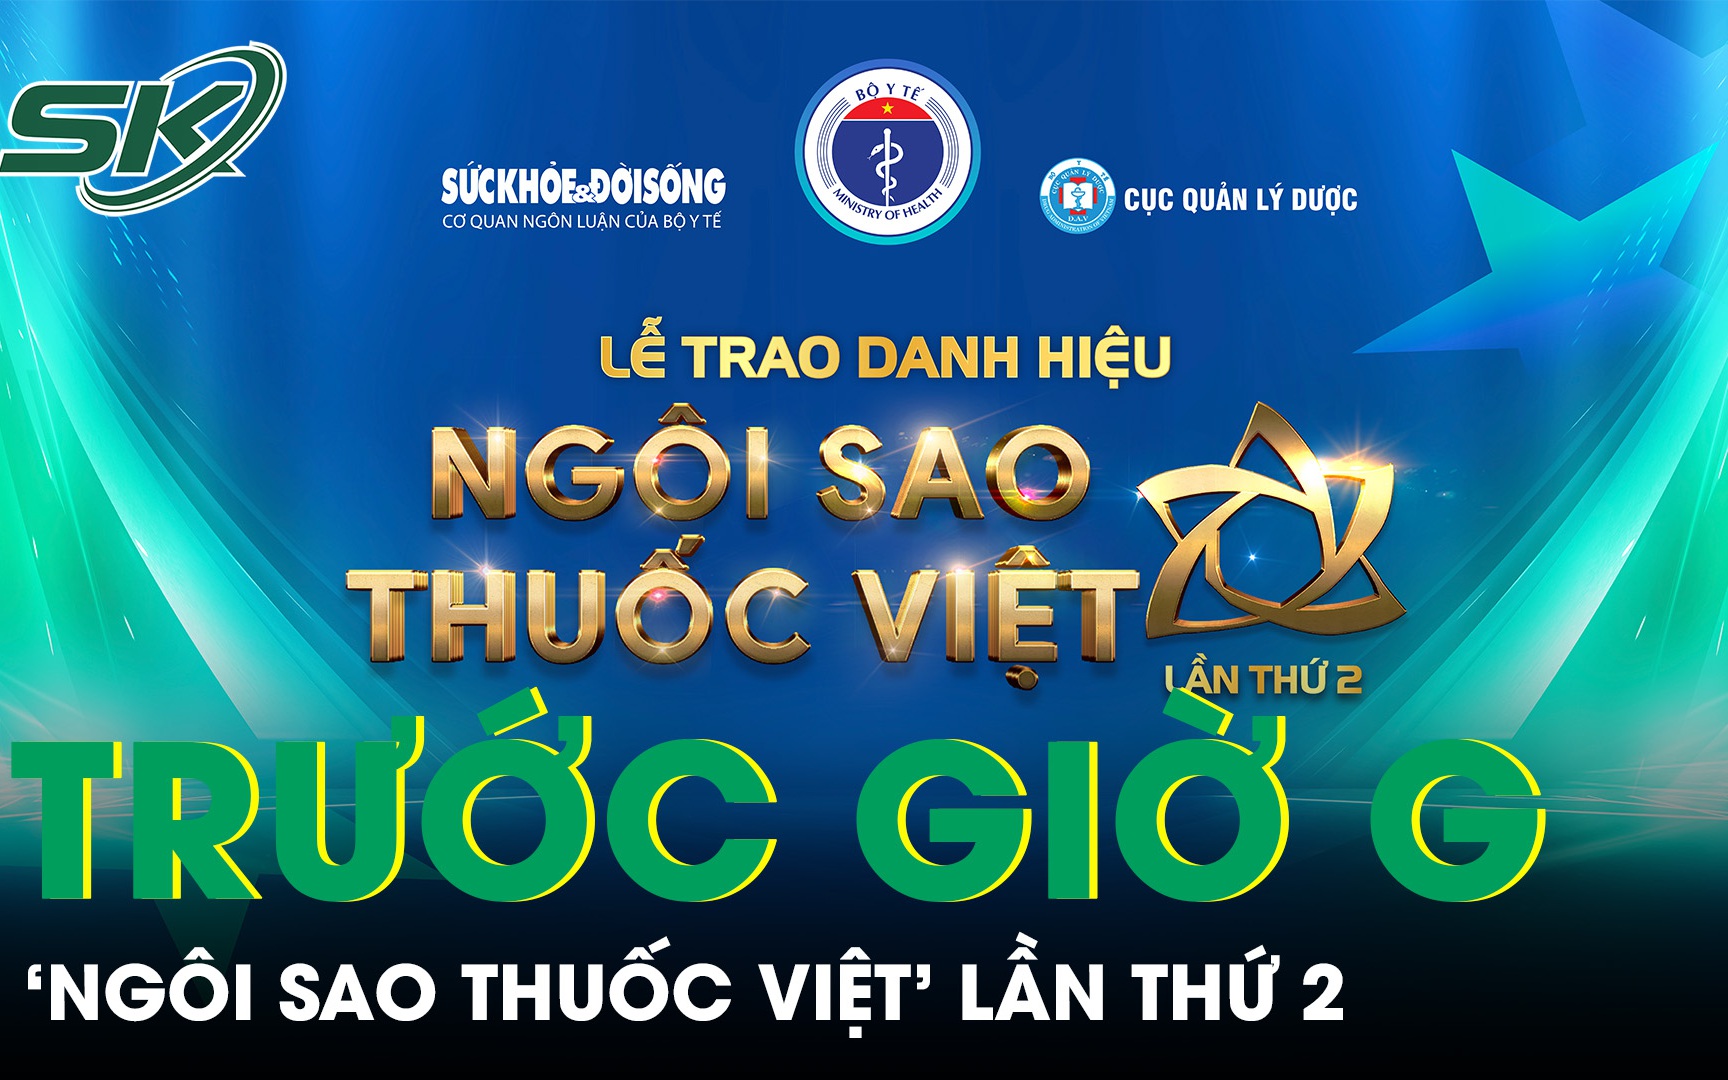 Sẵn sàng cho Lễ trao danh hiệu 'Ngôi sao thuốc Việt' lần thứ 2